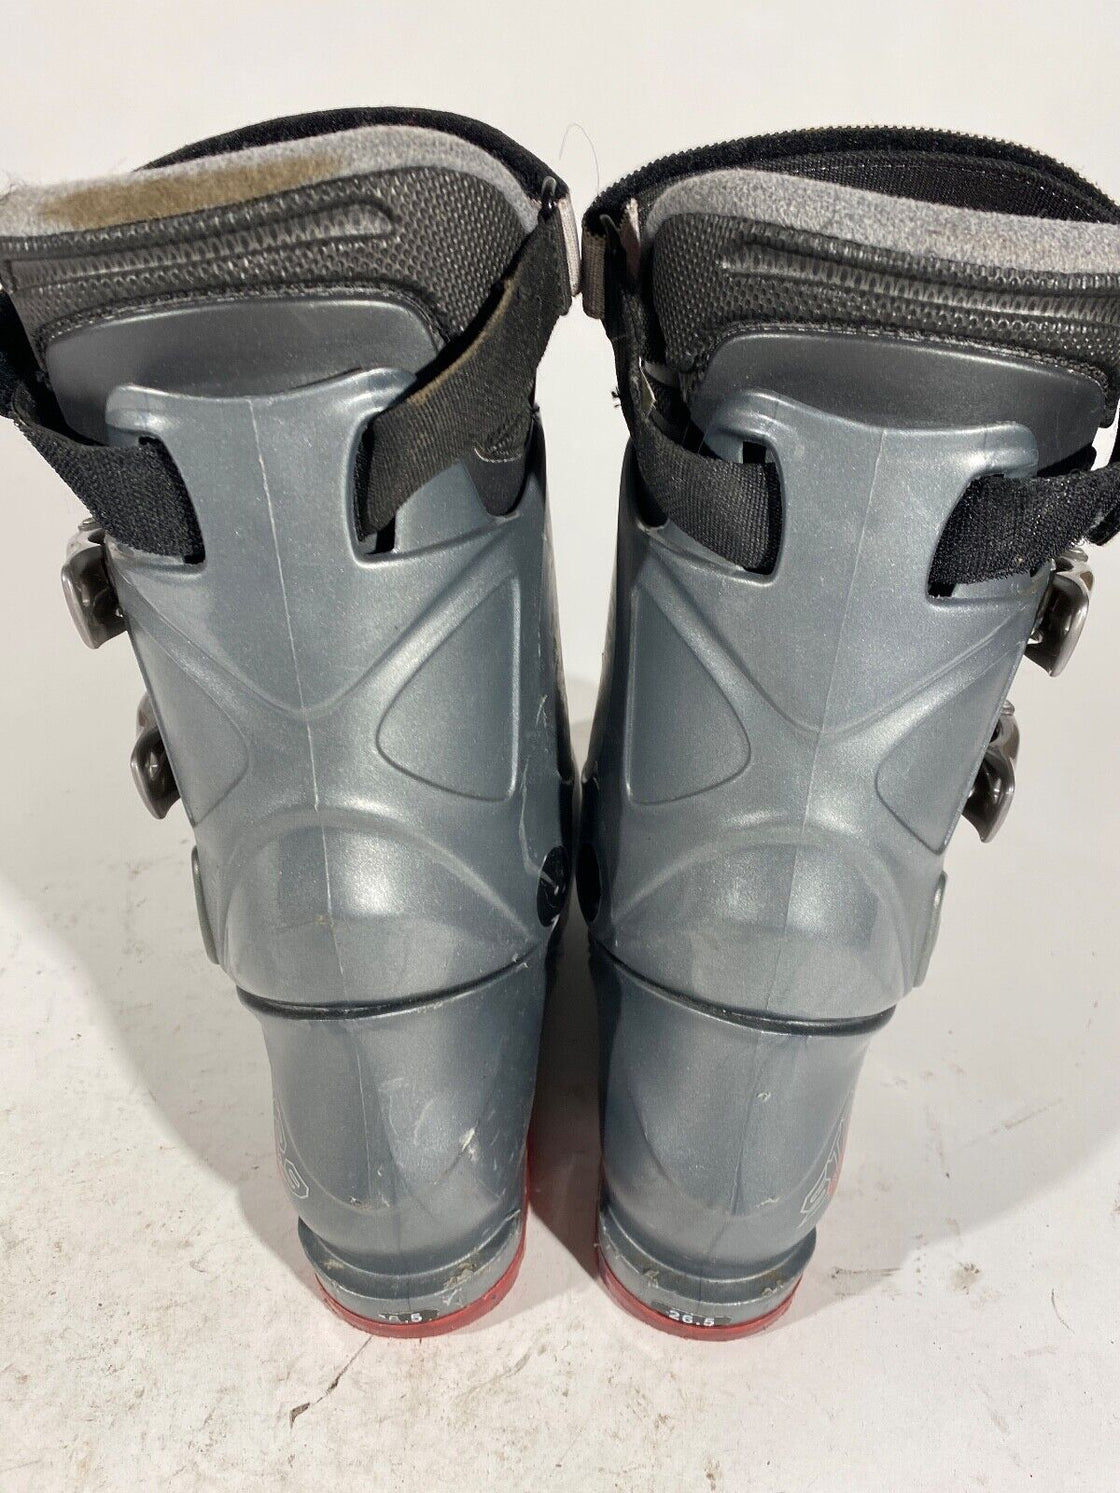 TECNO Alpine Ski Boots Downhill Boots Size Mondo 265 mm, Outer Sole 303 mm